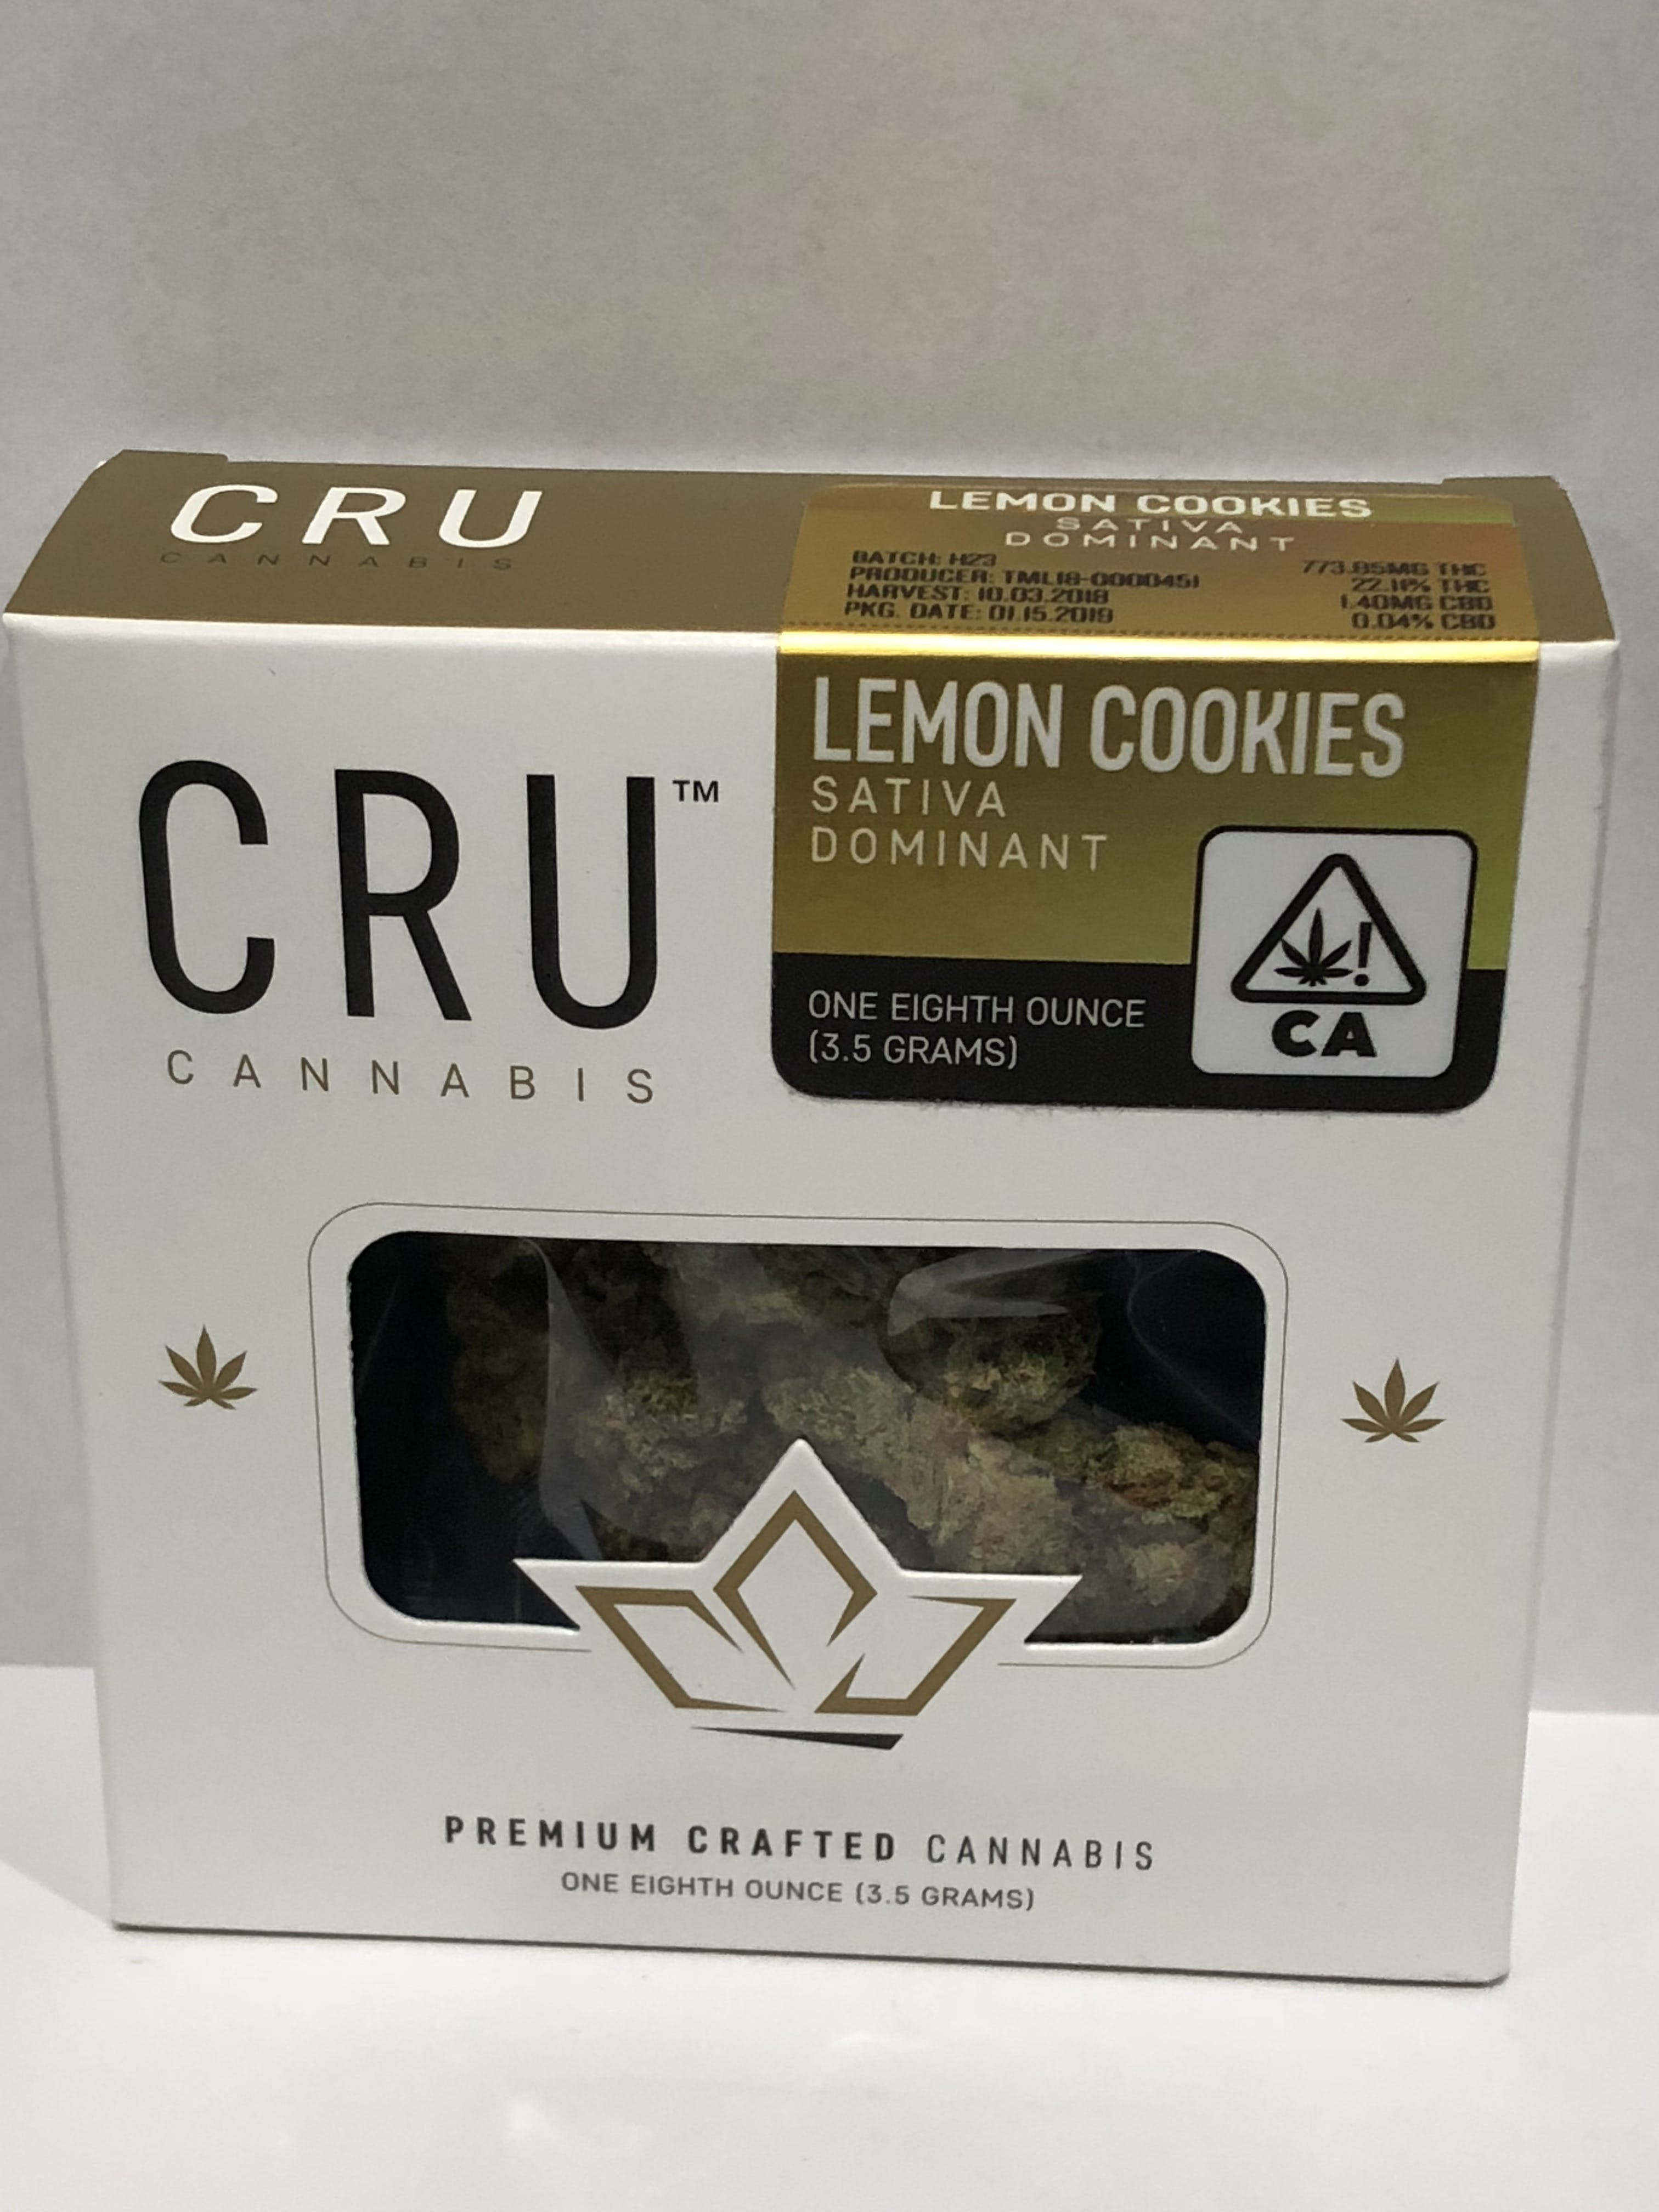 marijuana-dispensaries-824-e-anaheim-st-unit-b-wilmington-cru-cannabis-lemon-cookies